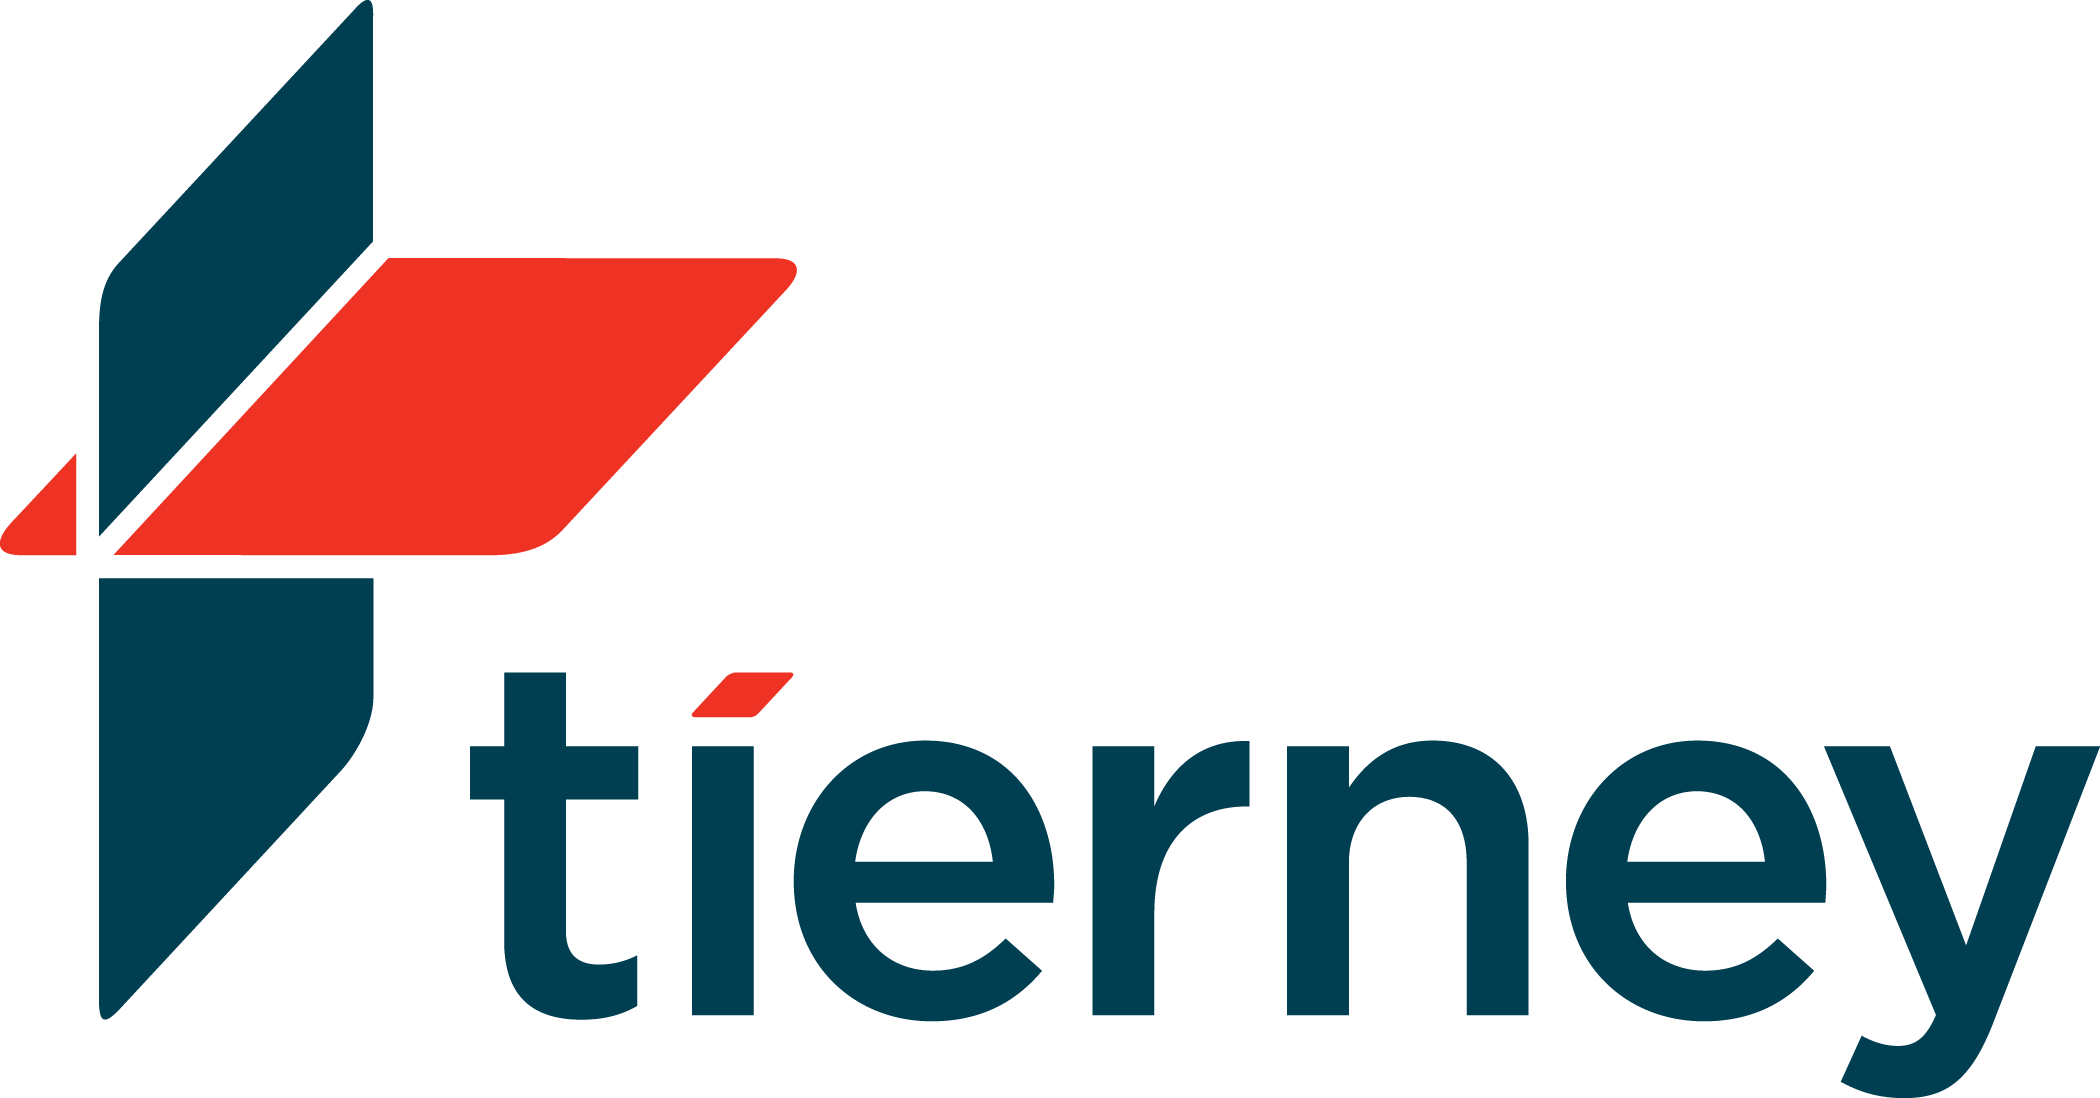 Tierney Company Logo